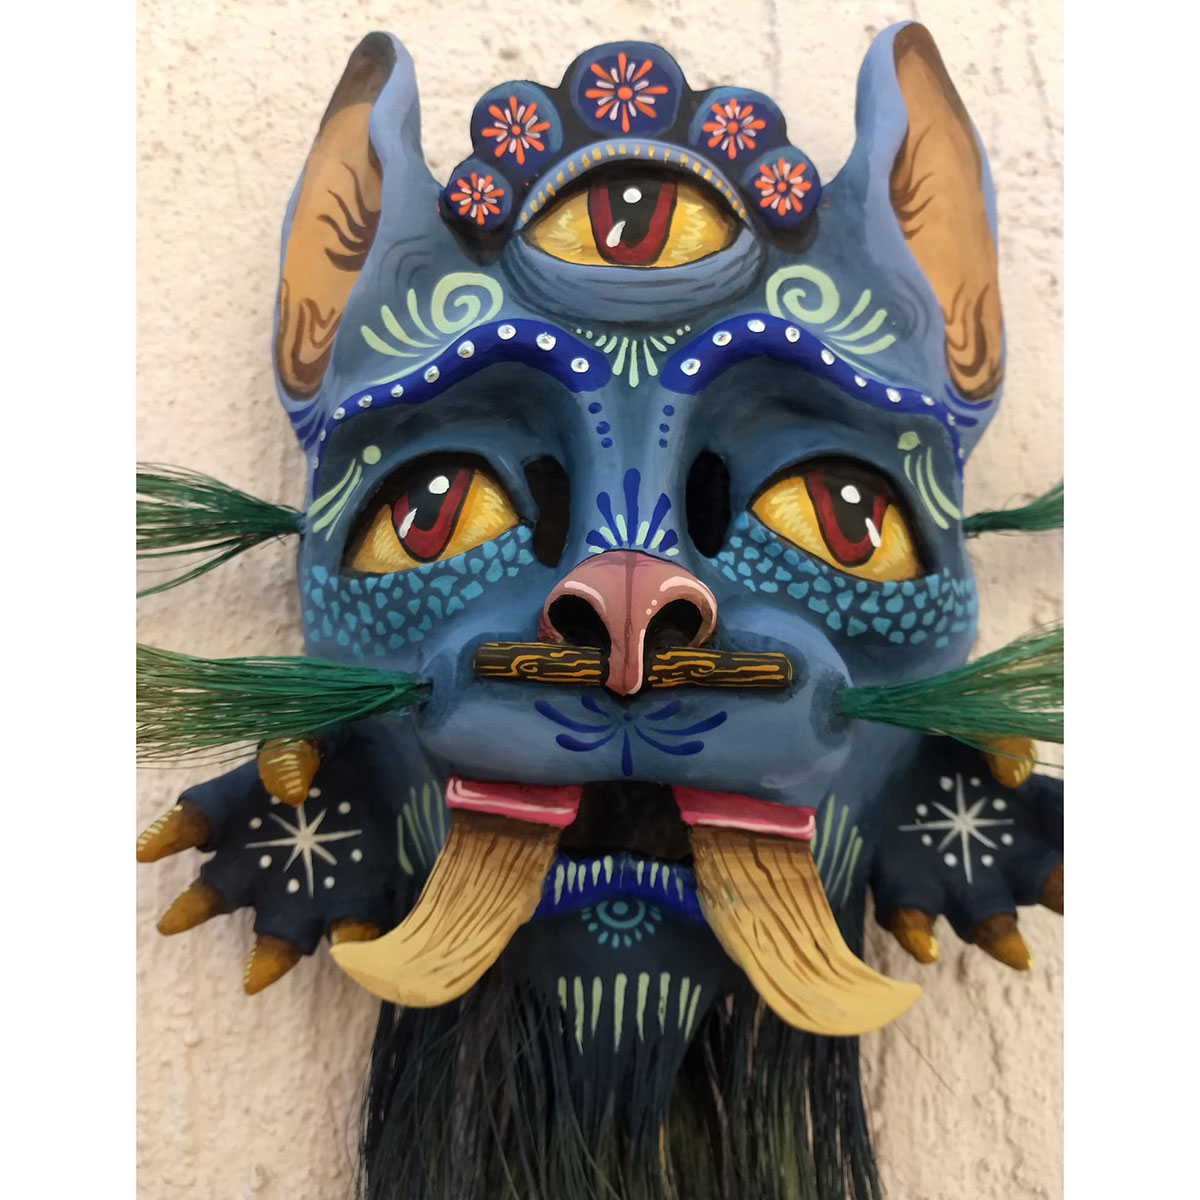 Cartoneria (Mexican Paper Mache) Isaias Alejandro Morales Delgado: Cemiztli (Puma Cat) Mask Alebrijes